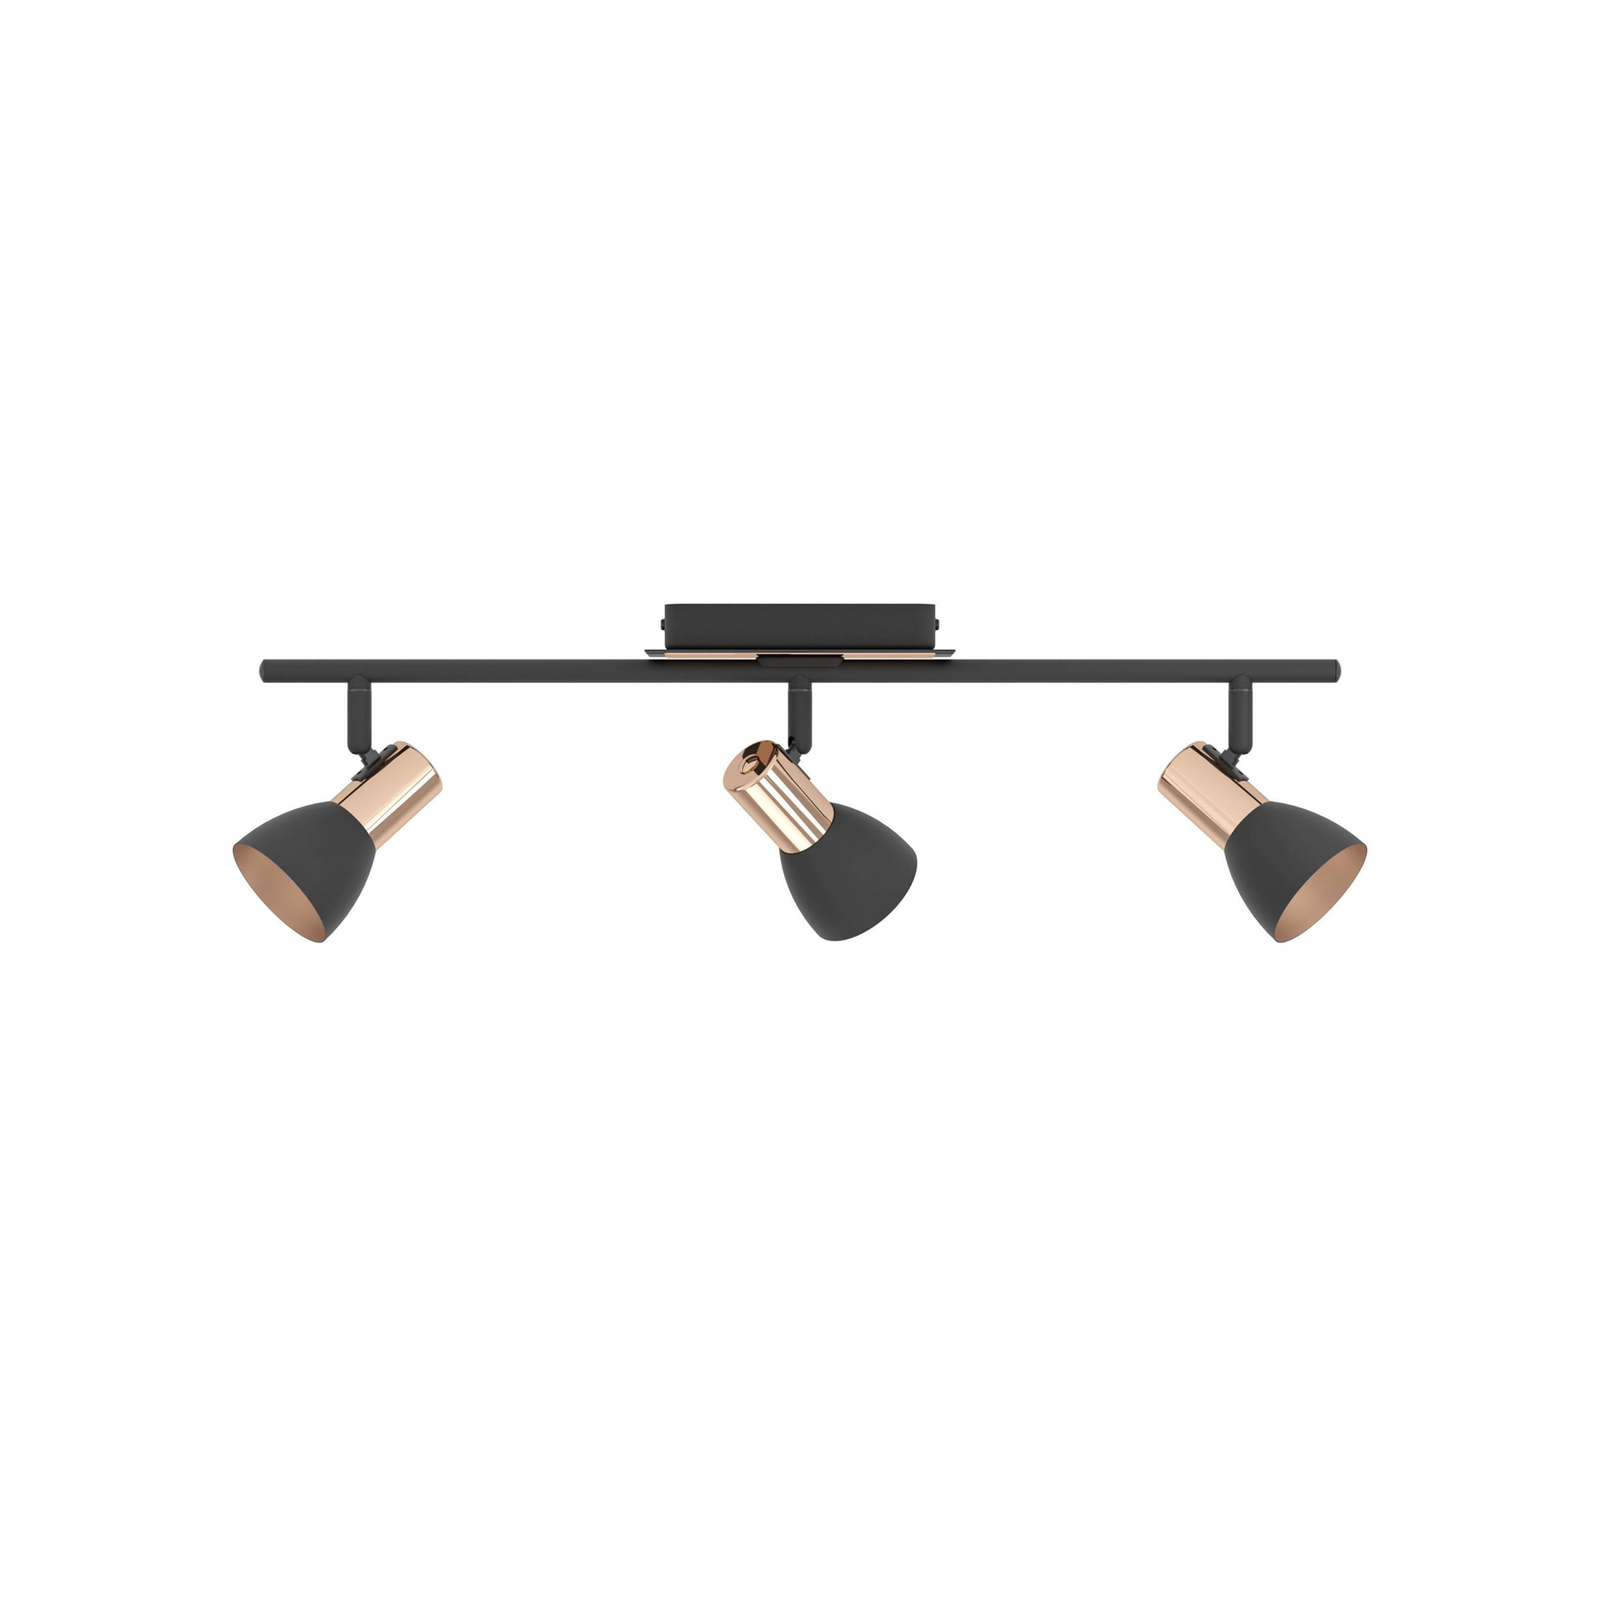 Barnham LED plafondspot, lengte 58,5 cm, zwart/koper